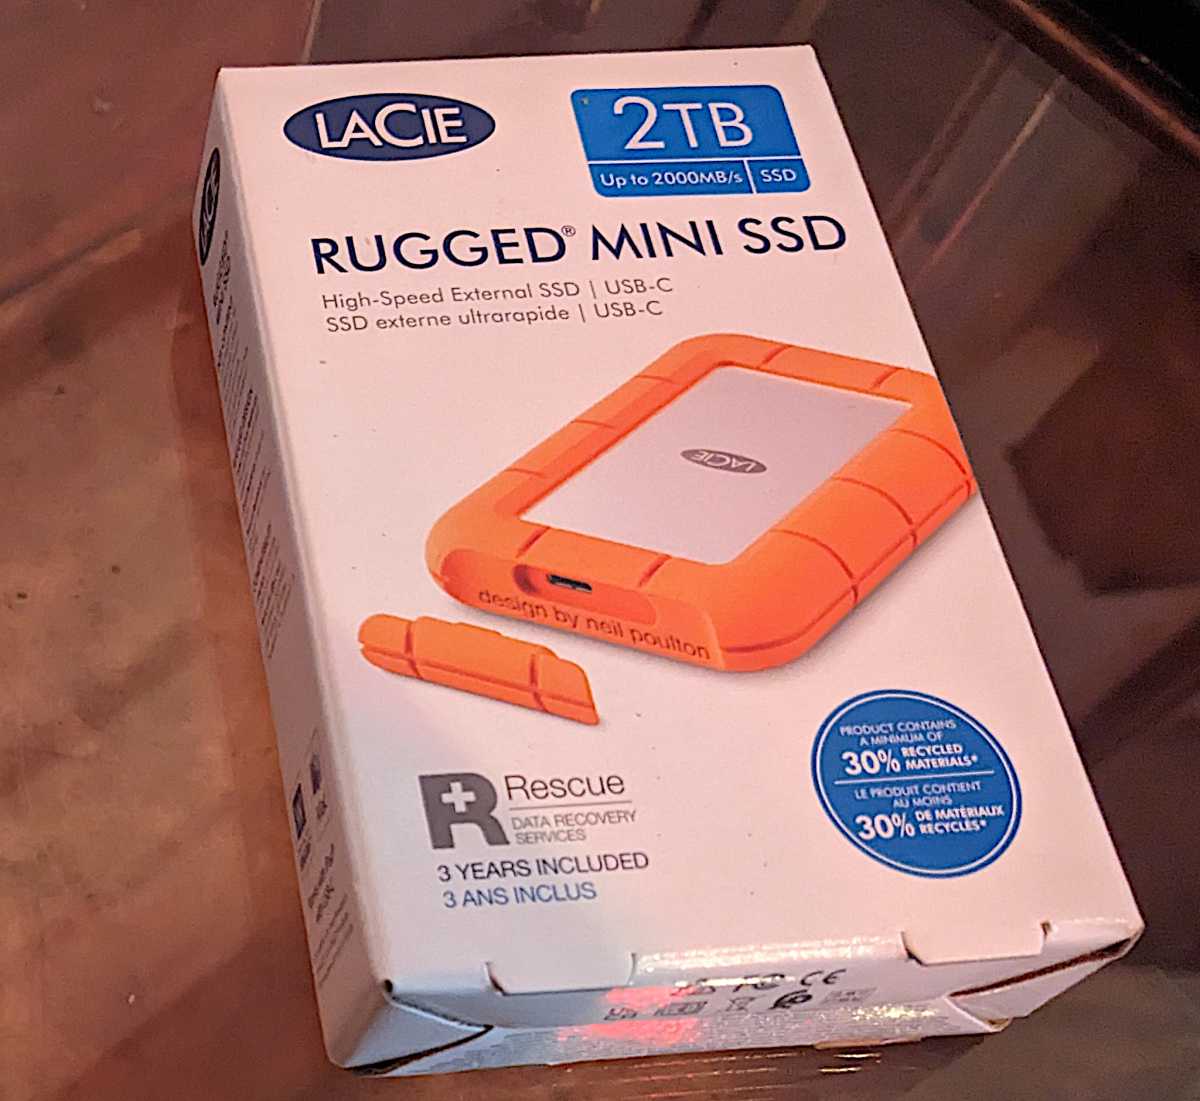 Mini SSD resistente de LaCie